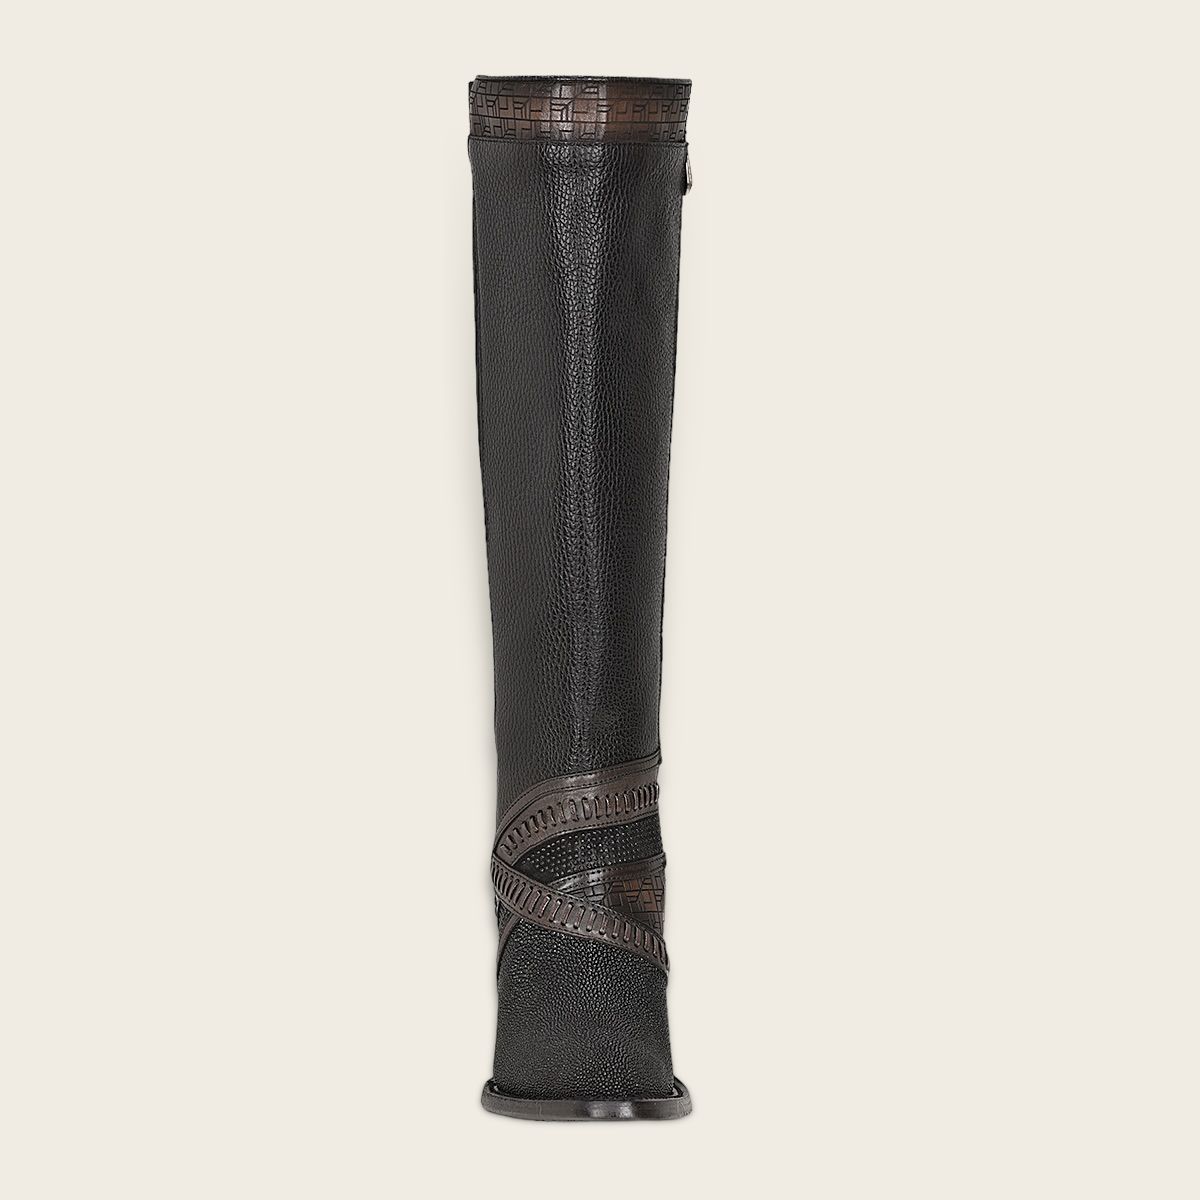 3F99MA - Cuadra black stingray boots for women-CUADRA-Kuet-Cuadra-Boots